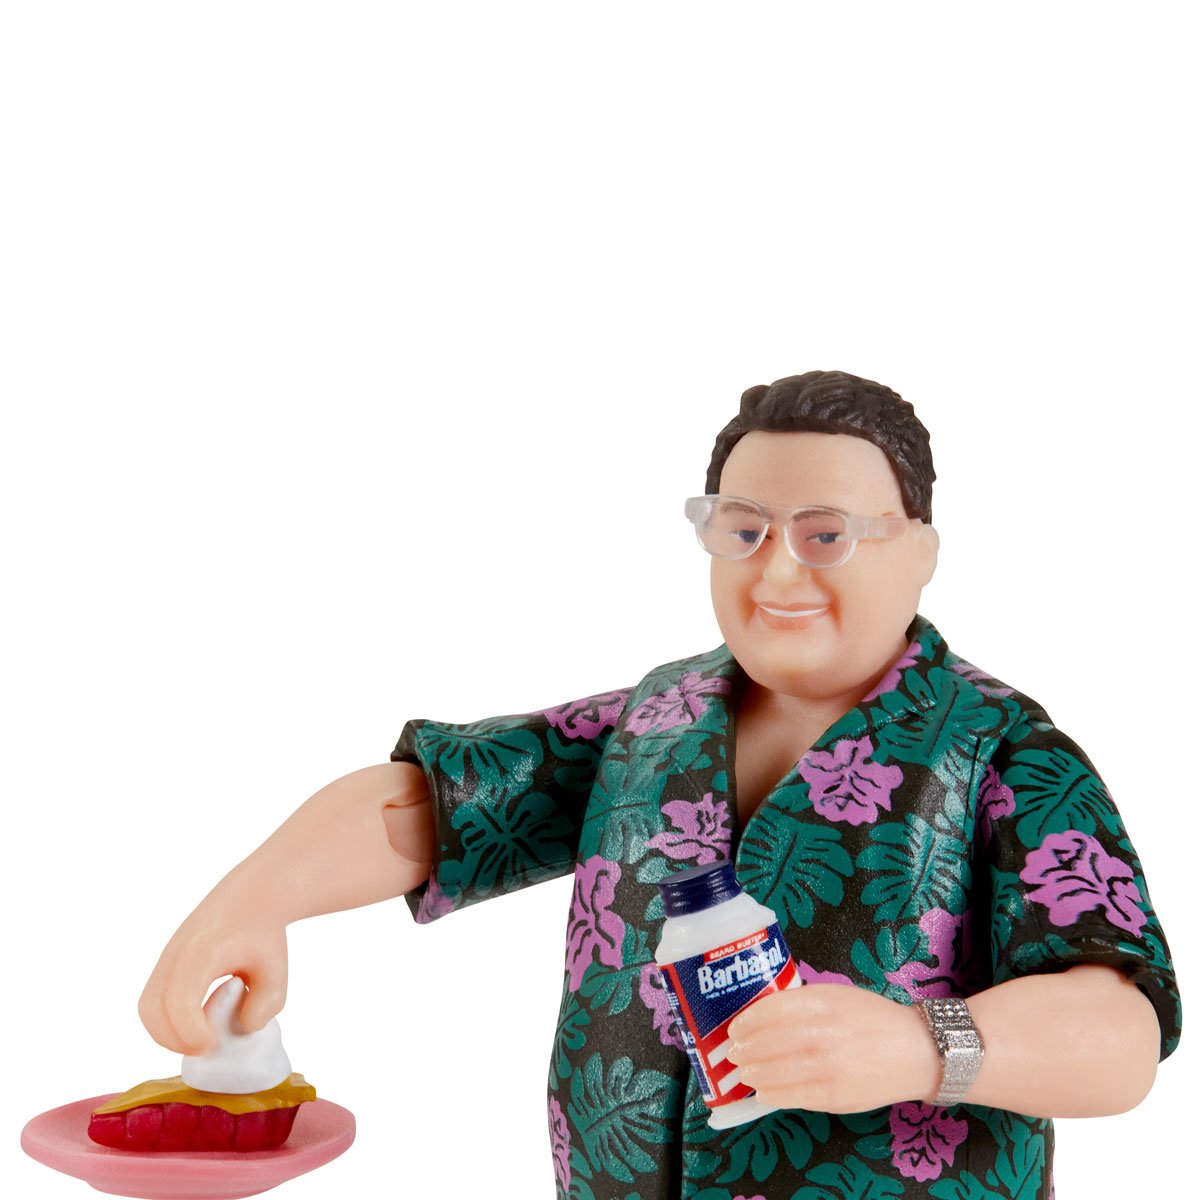 Mattel Jurassic Park Barbasol Dennis Nedry Action Figure 2020 for sale online